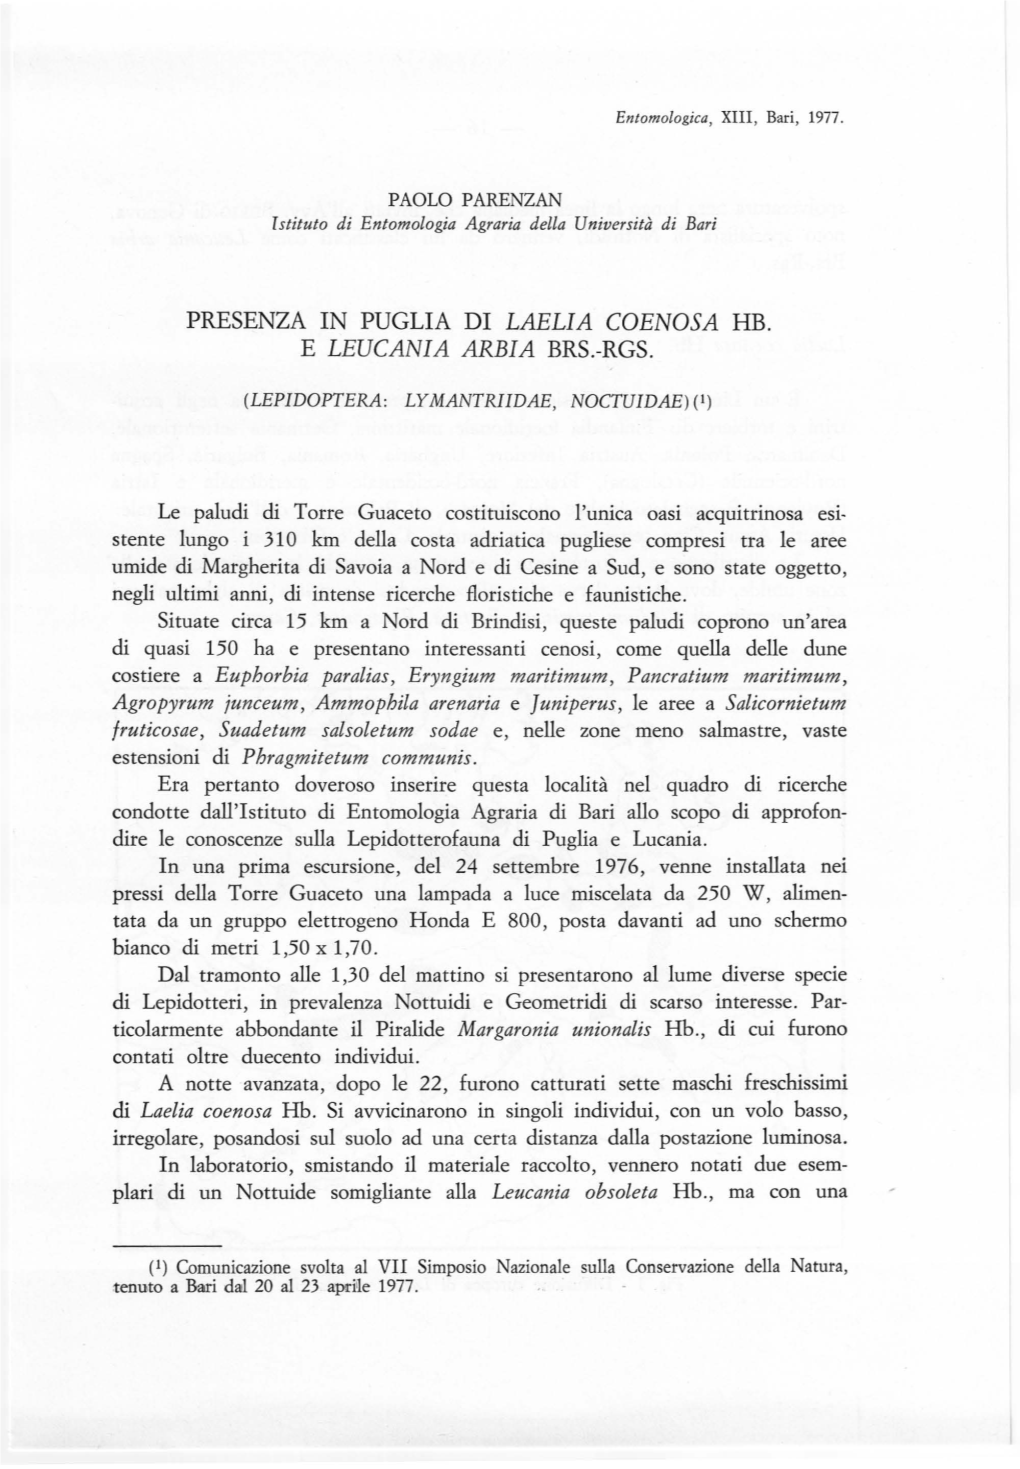 Presenza in Puglia Di Laelia Coenosa Hb. E Leucania Arbia Brs.-Rgs